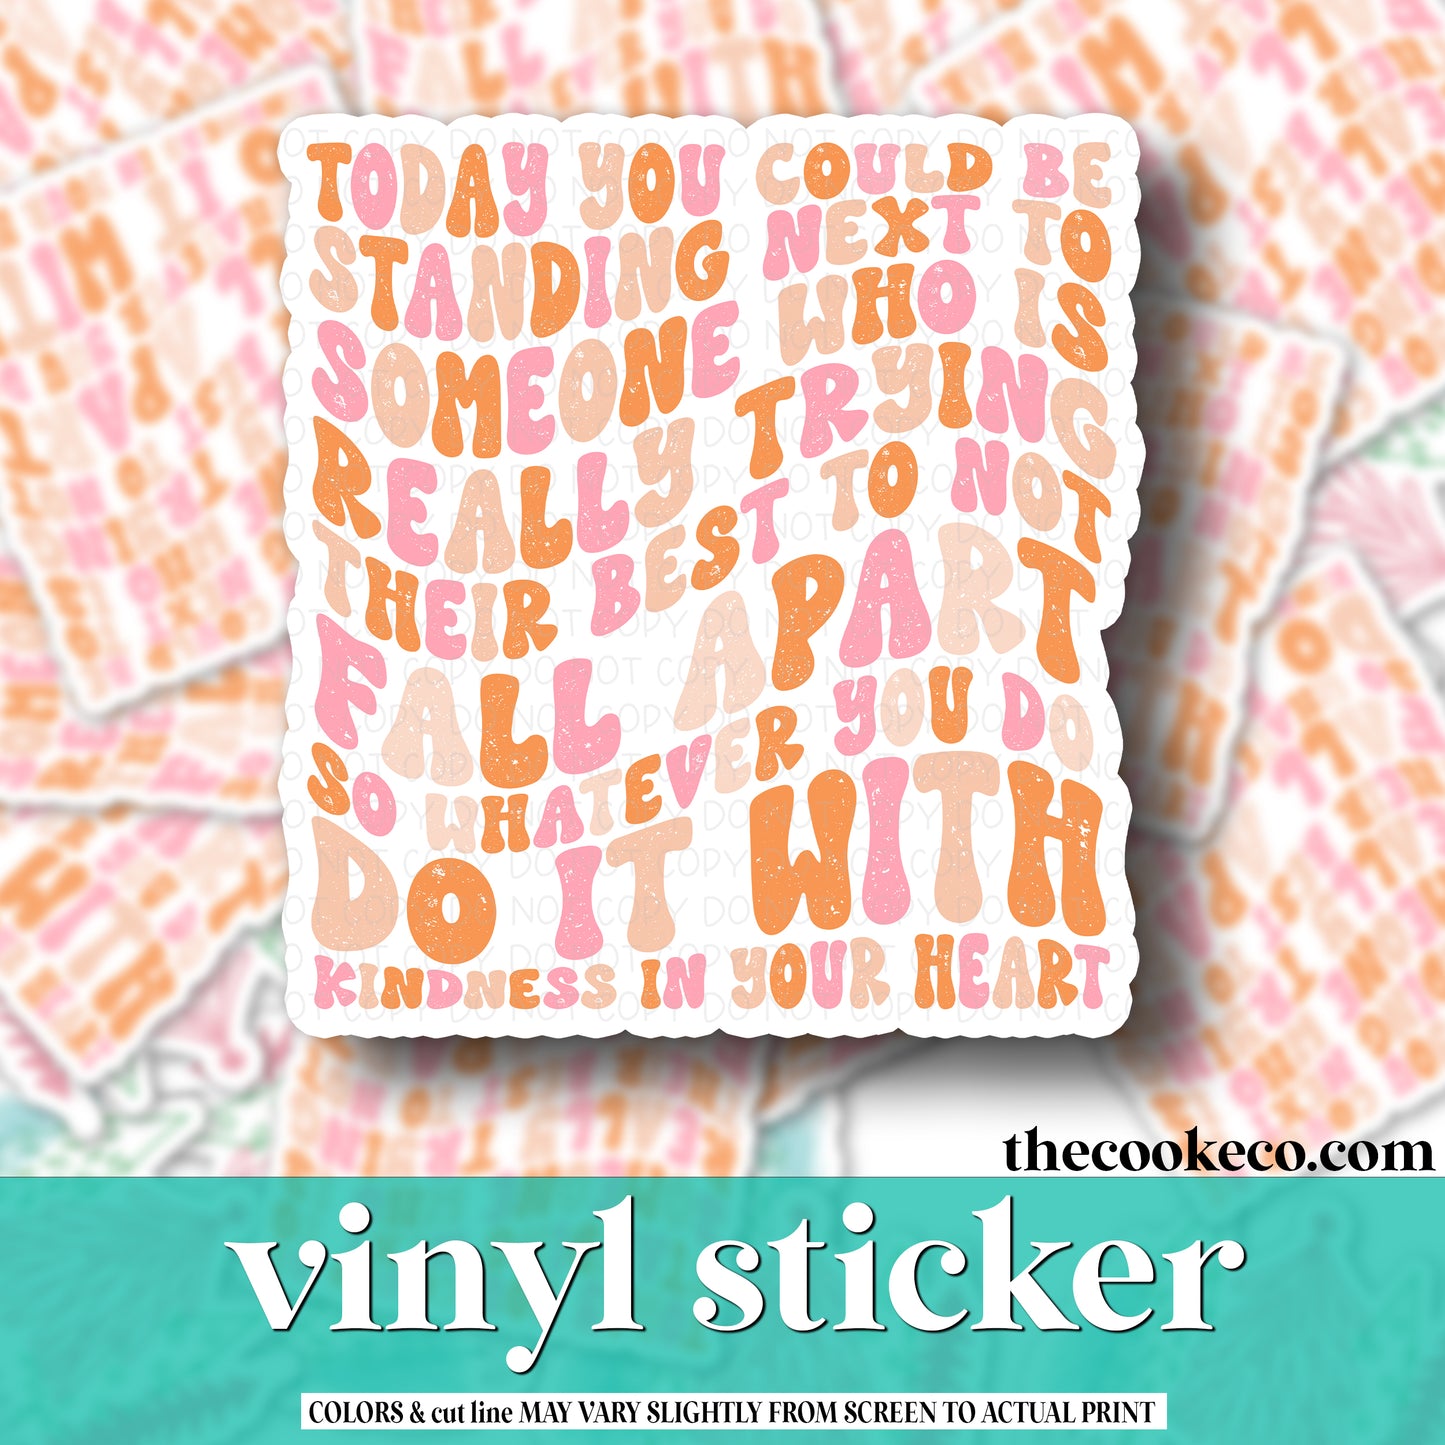 Vinyl Sticker | #V0988 - DO IT WITH KINDNESS